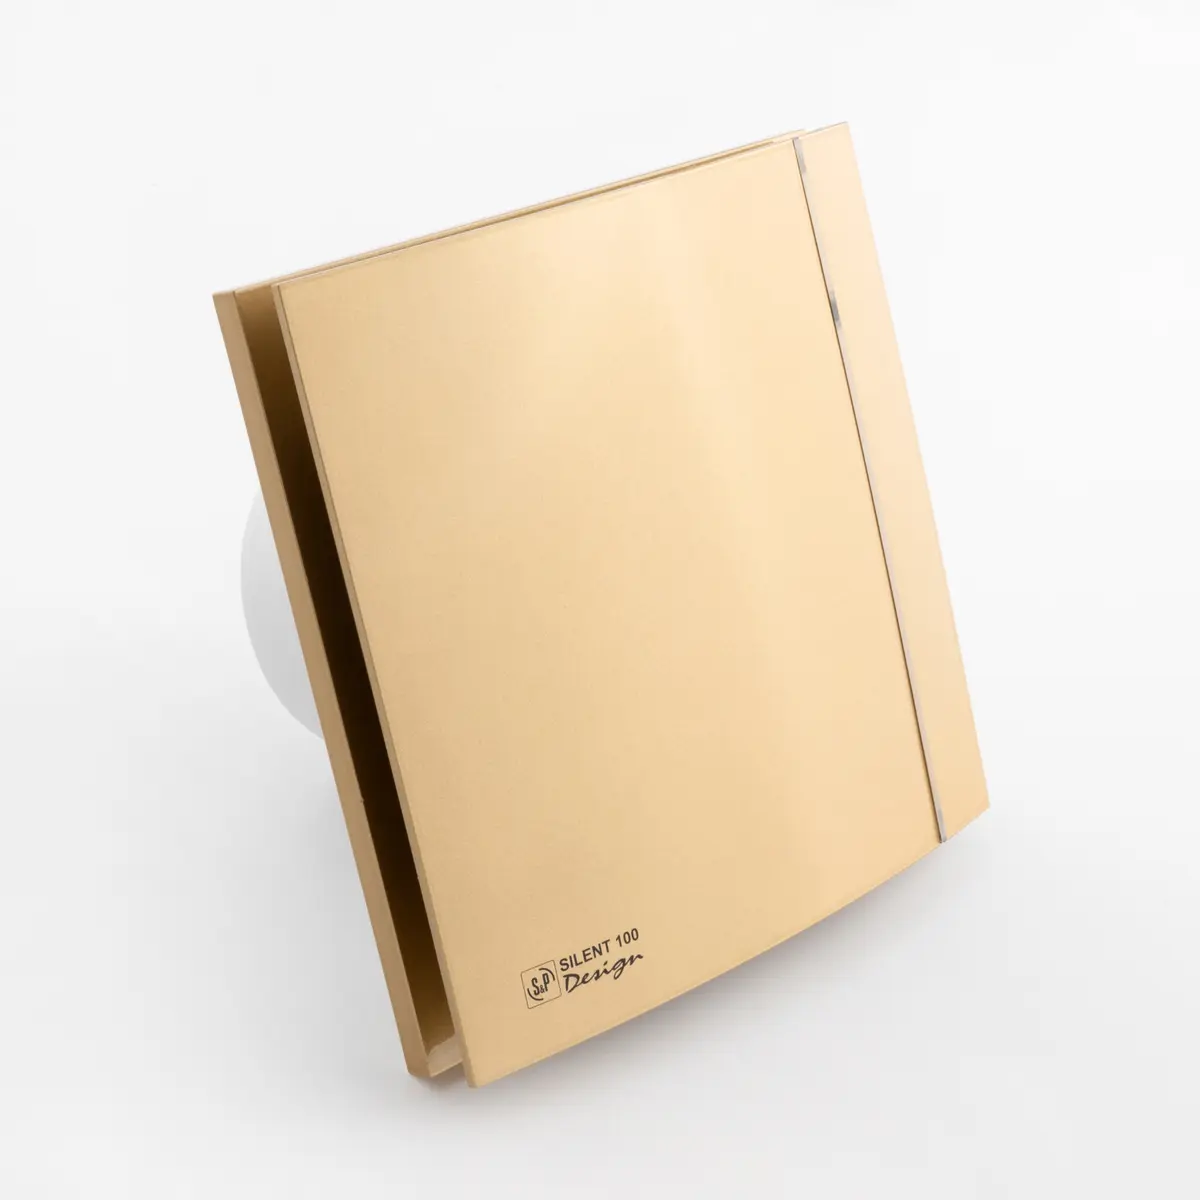 Накладной вентилятор soler&palau silent 100-cz gold design-4c